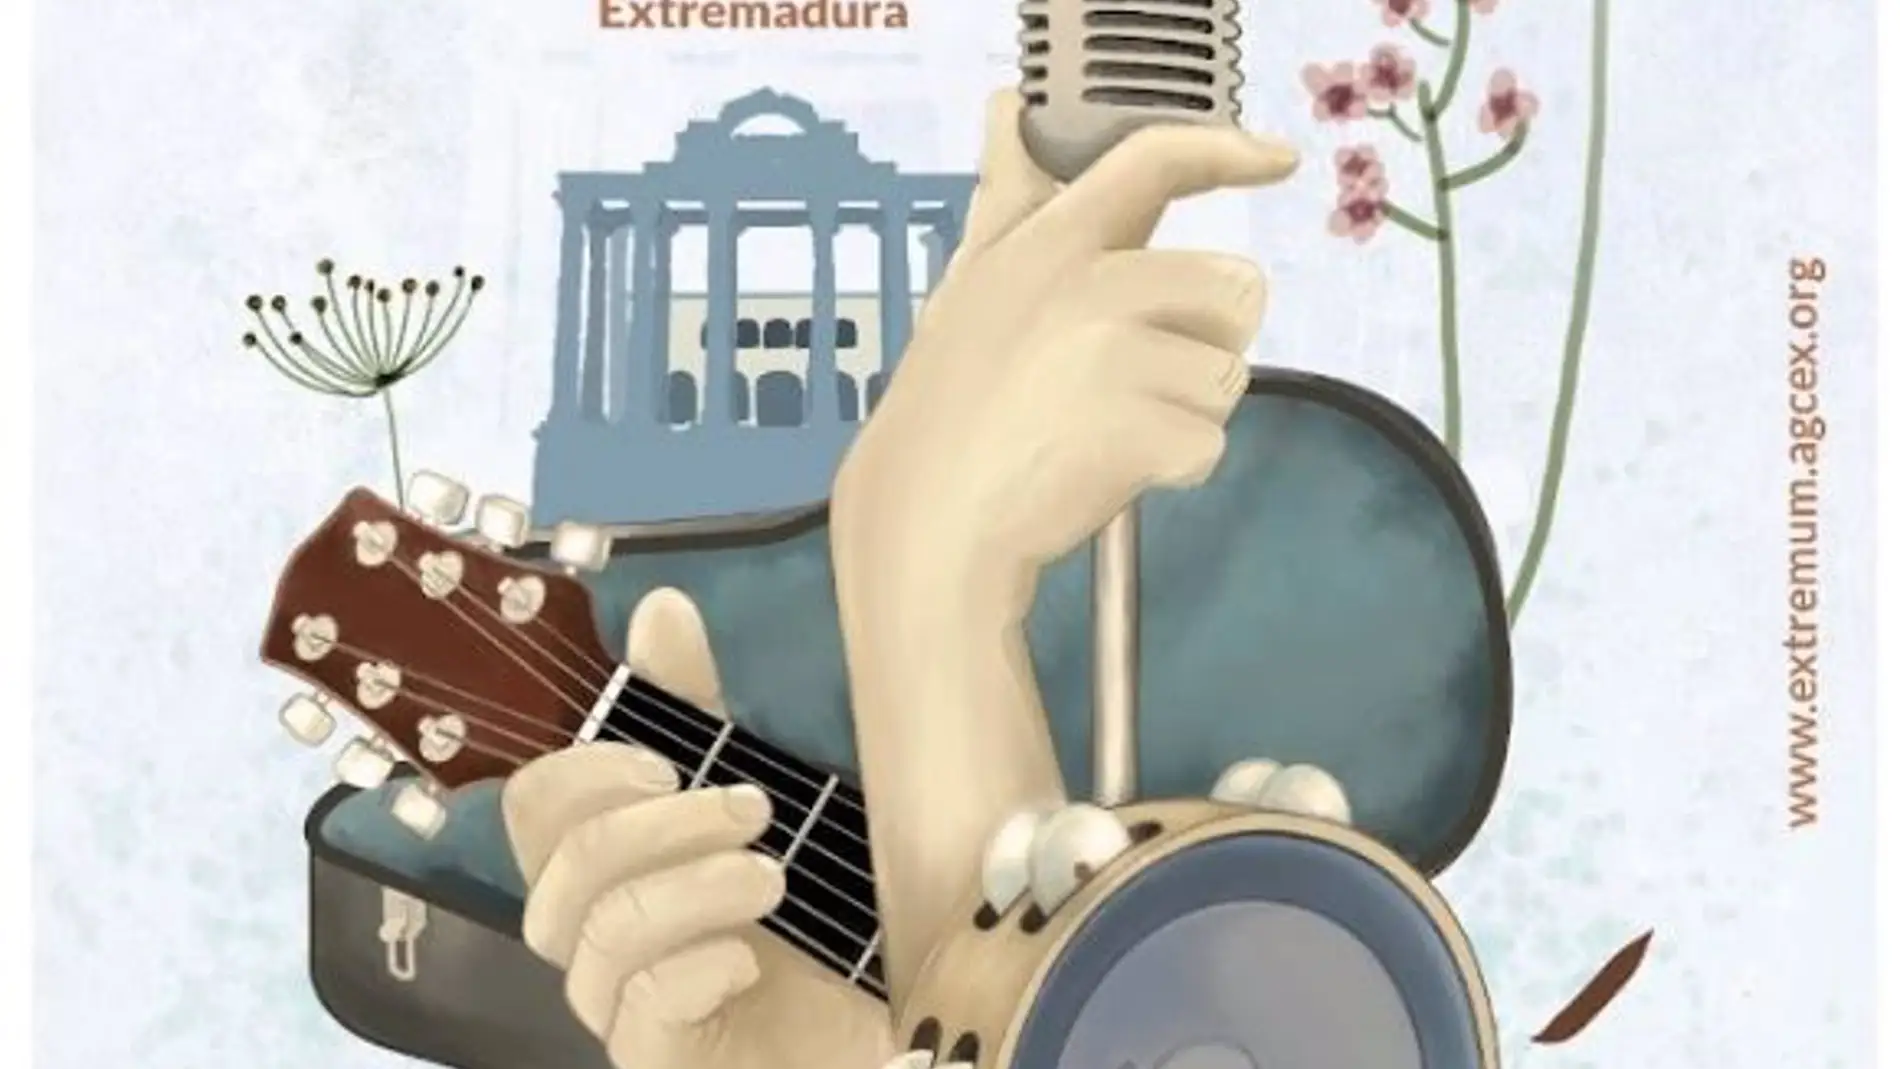 Mérida acogerá del 21 al 23 de Abril las VI Jornadas Profesionales de la Música en Extremadura